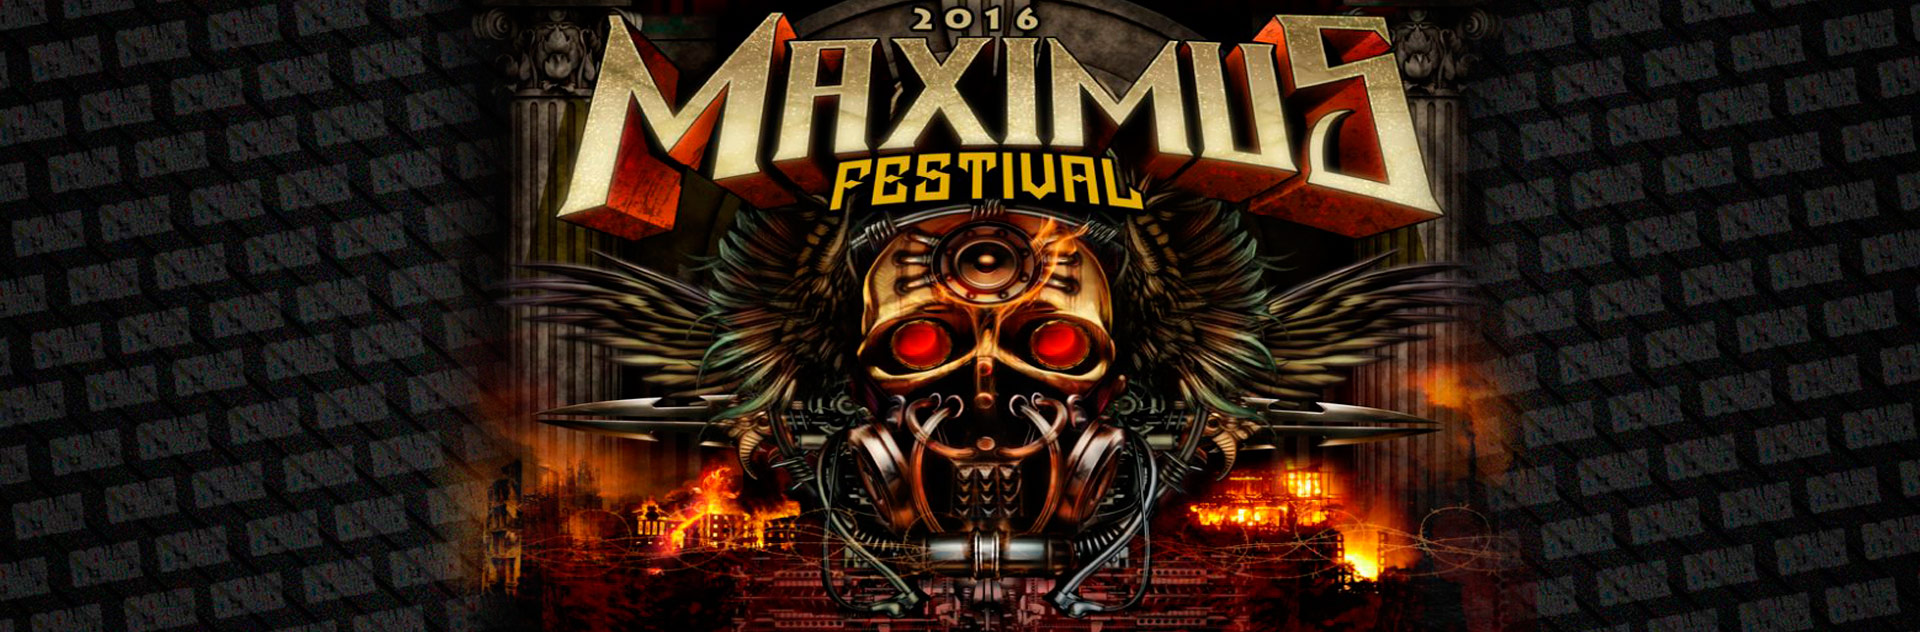 Promo Maximus Festival Via Instagram